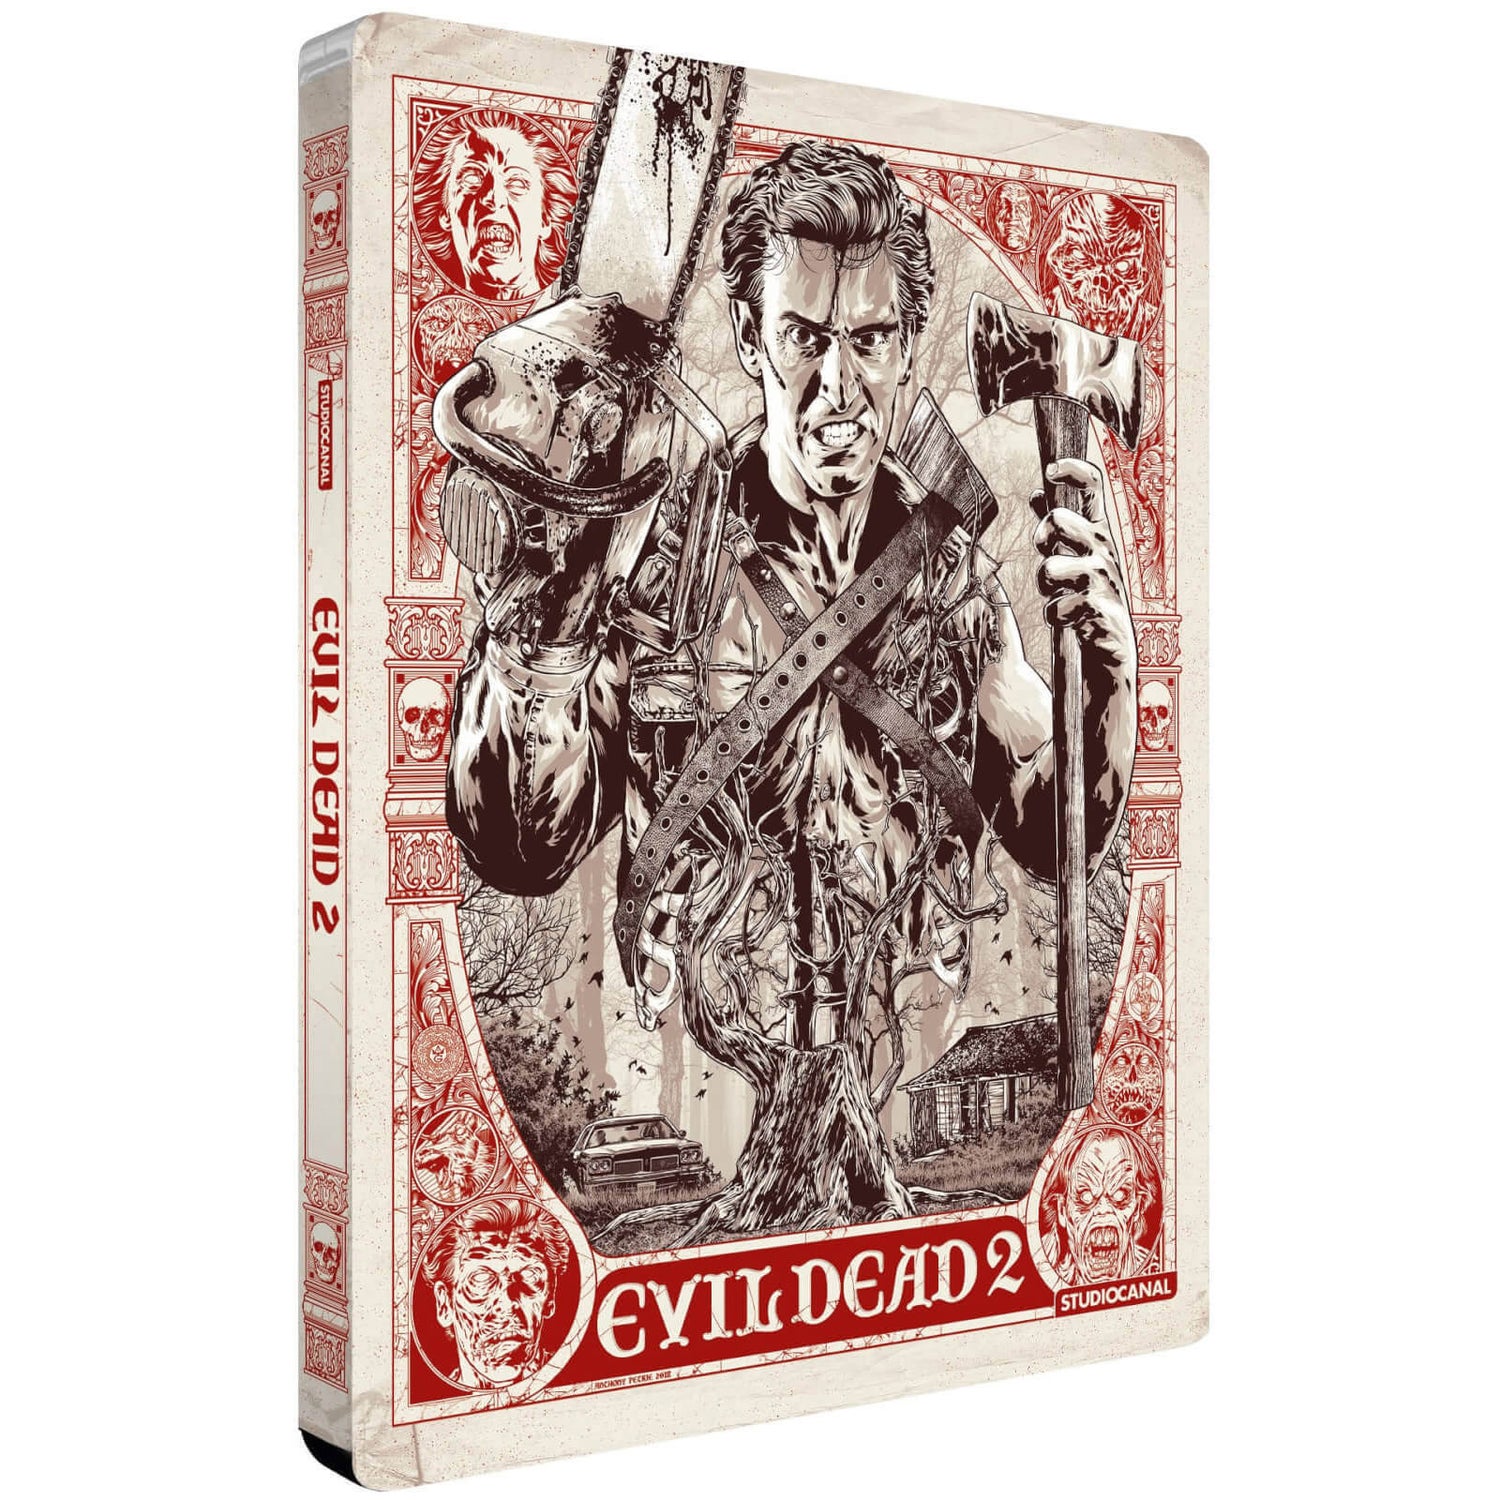 The Evil Dead 4K Blu-ray (4K Ultra HD + Blu-ray)